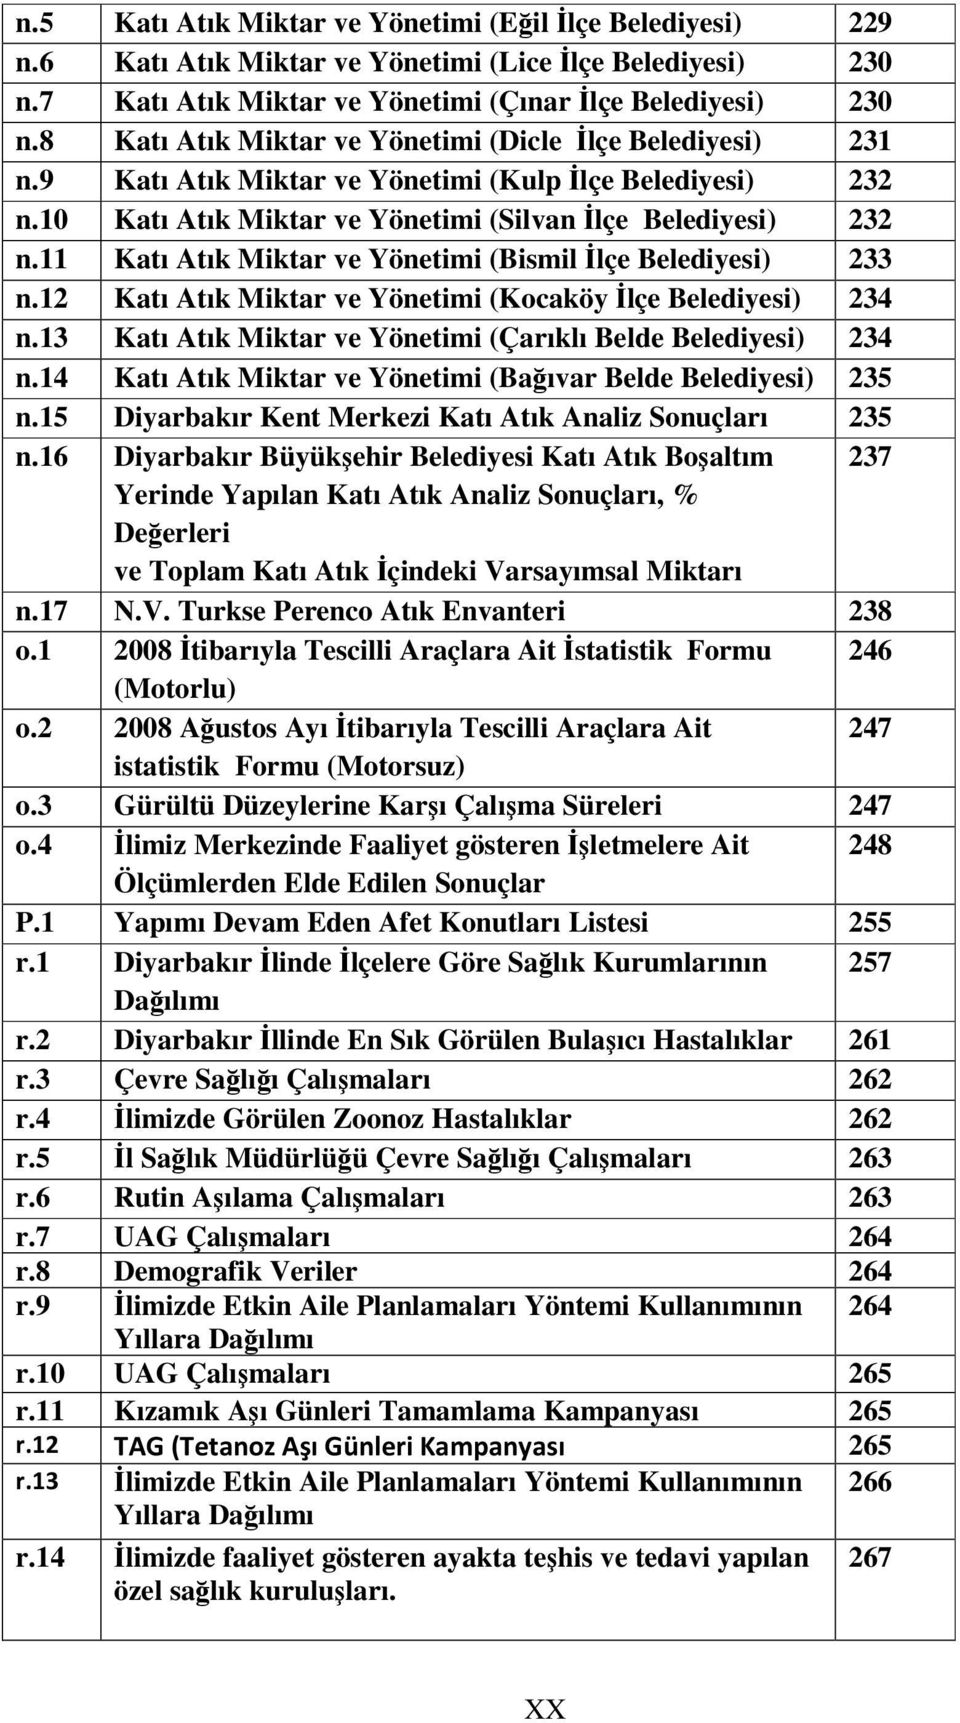 11 Katı Atık Miktar ve Yönetimi (Bismil lçe Belediyesi) 233 n.12 Katı Atık Miktar ve Yönetimi (Kocaköy lçe Belediyesi) 234 n.13 Katı Atık Miktar ve Yönetimi (Çarıklı Belde Belediyesi) 234 n.